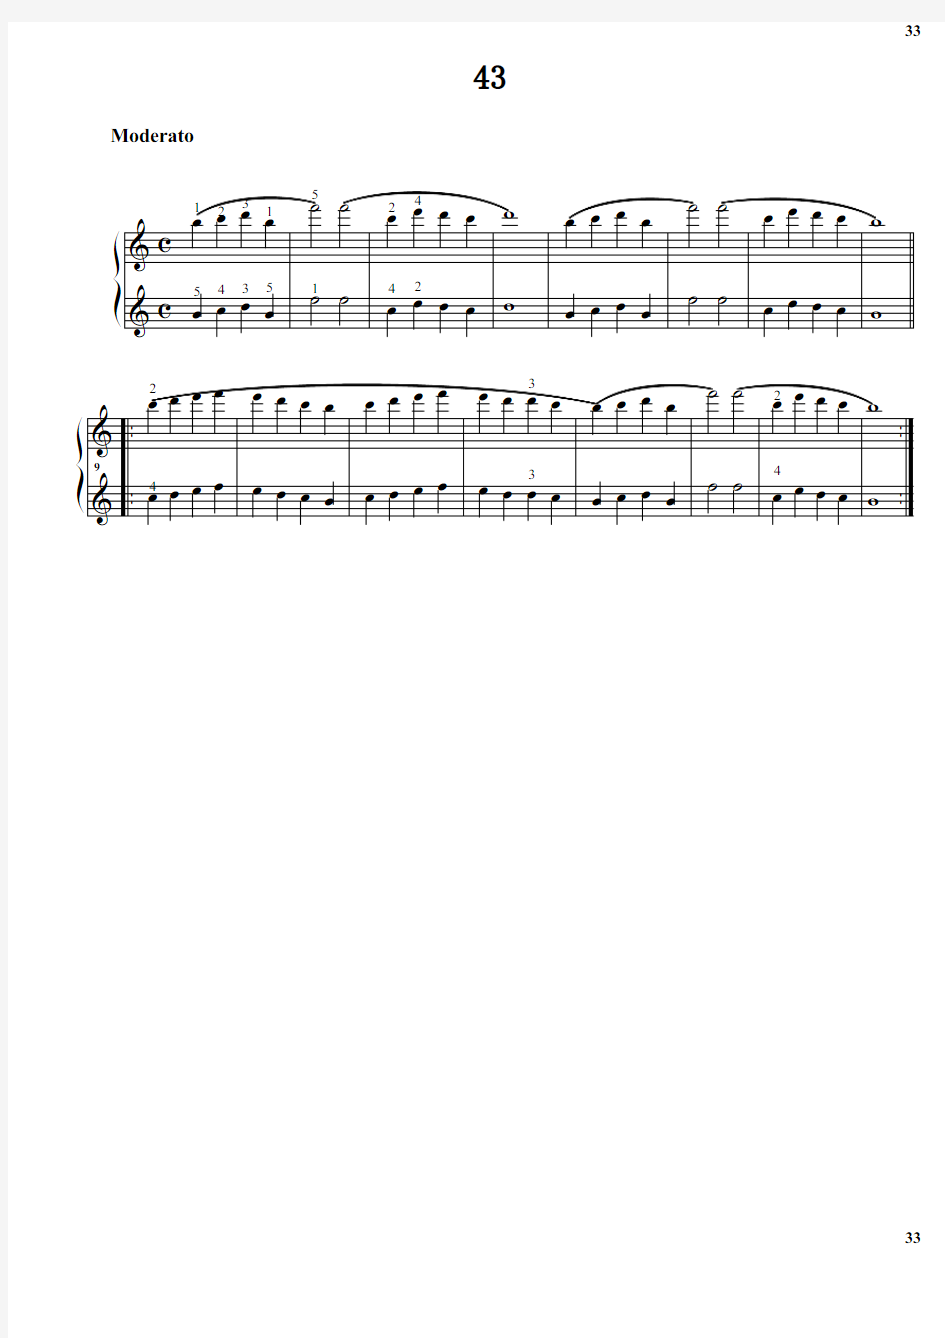 拜厄钢琴基本教程 第1阶段.43 原版 正谱 五线谱 钢琴谱